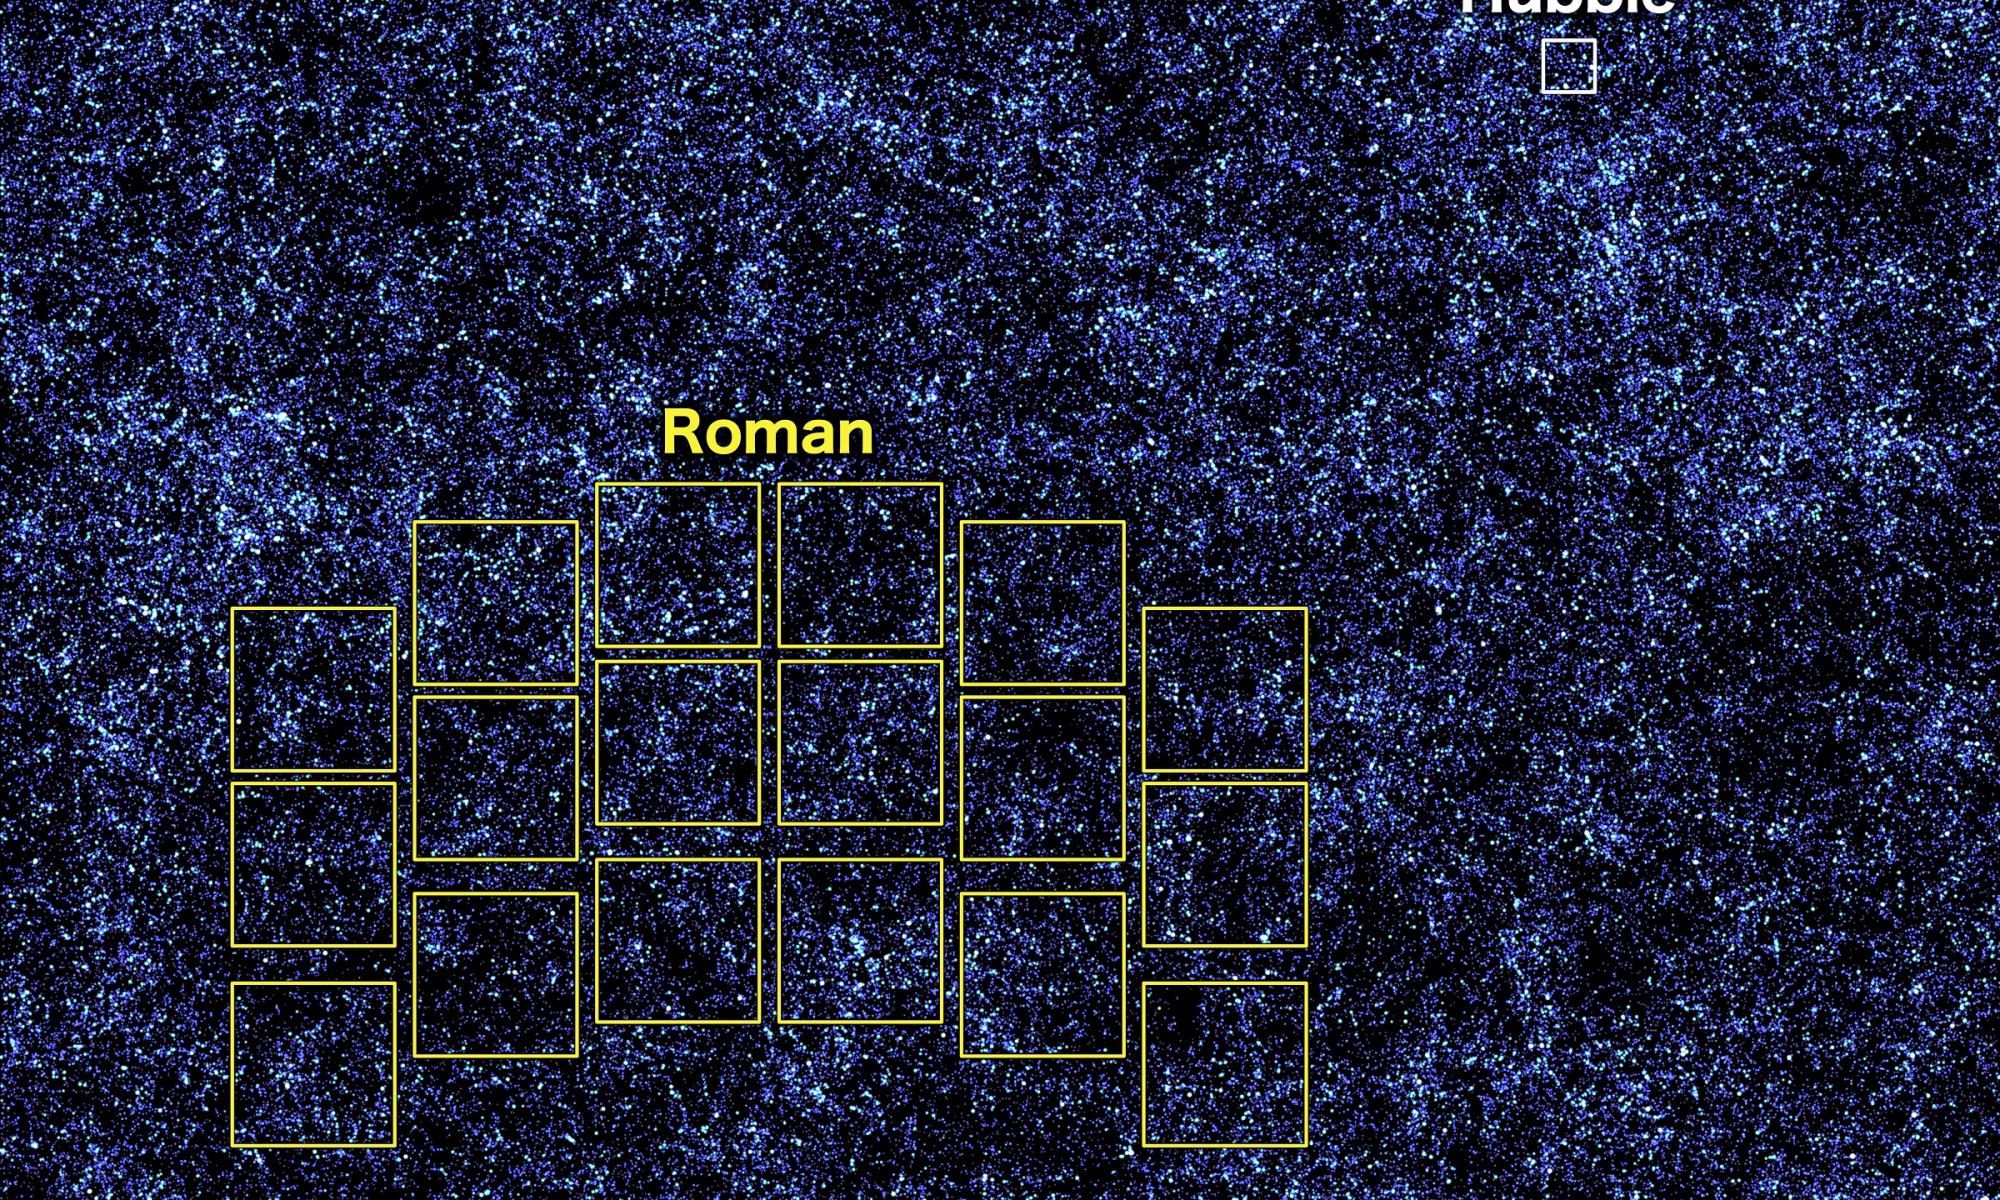 yung_survey_roman-hubble_scale_mkiv2-2000x1200.jpg